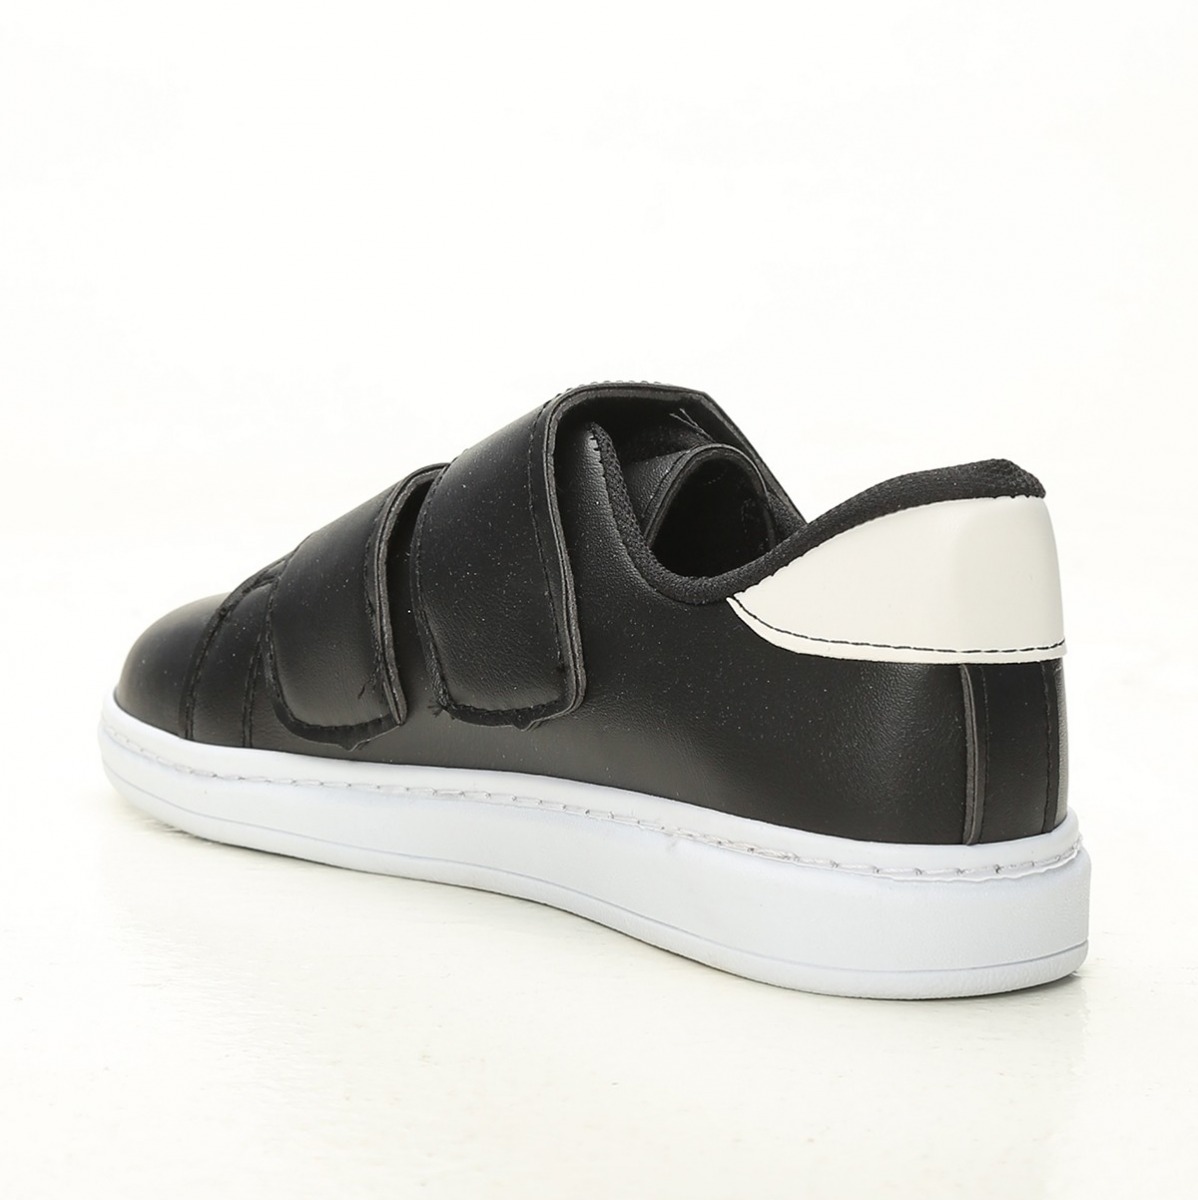 Flo Siyah-Beyaz-Beyaz Kadın Cırtlı Spor Ayakkabı 4000-19-101003. 3